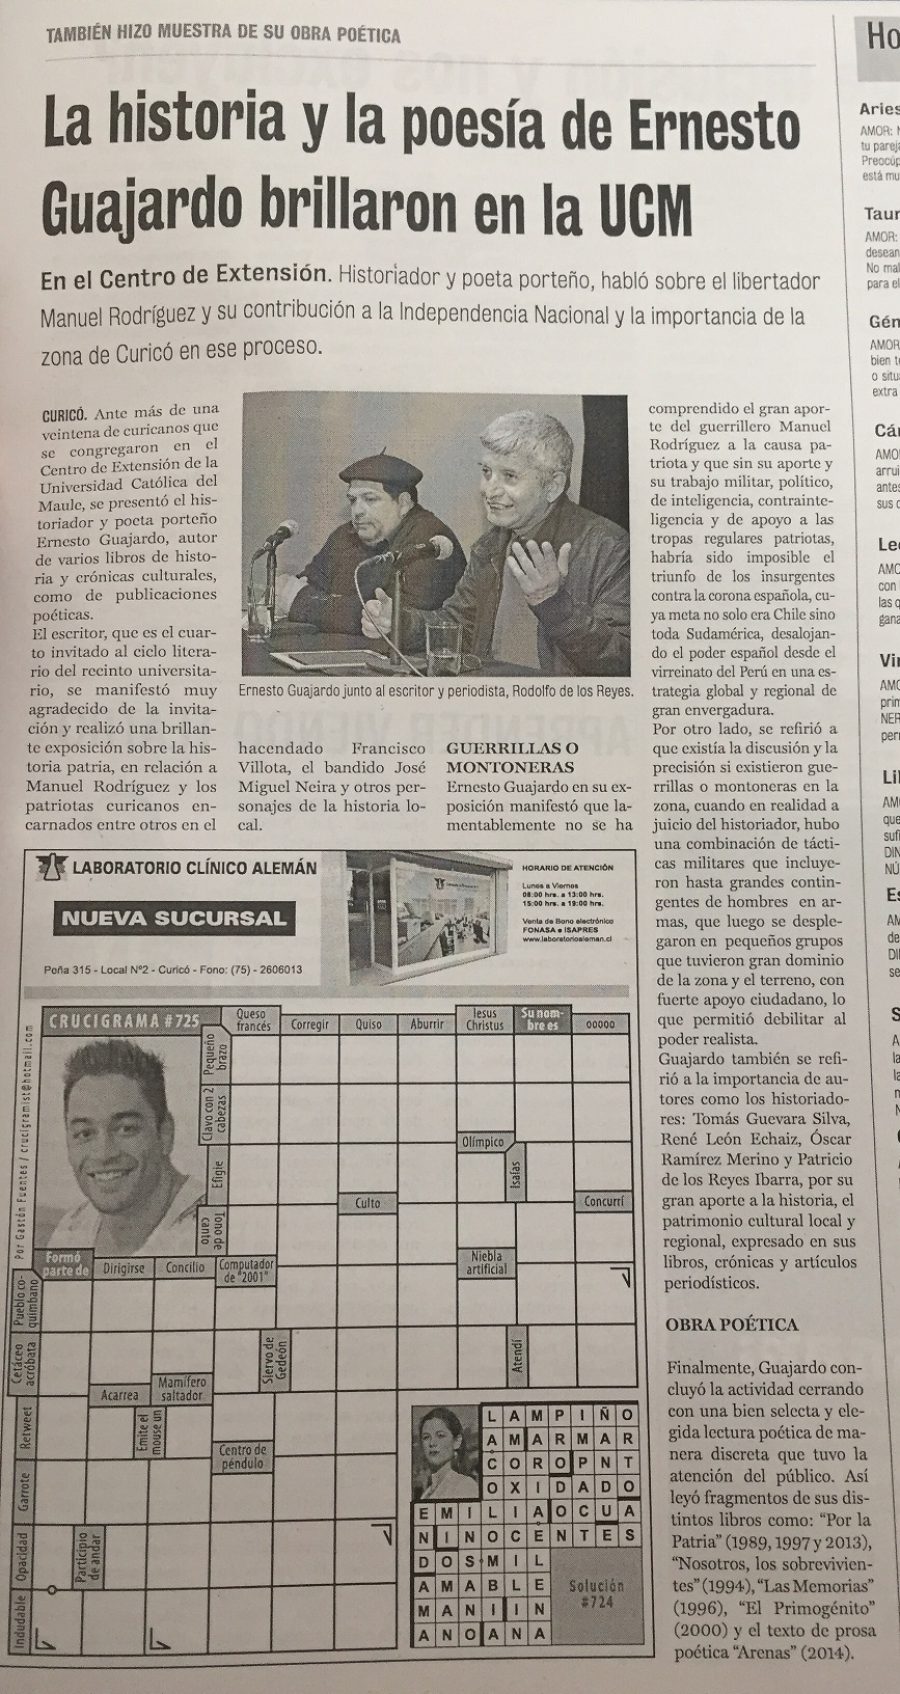 28 de septiembre en Diario La Prensa: “La historia y la poesía de Ernesto Guajardo brillaron en la UCM”